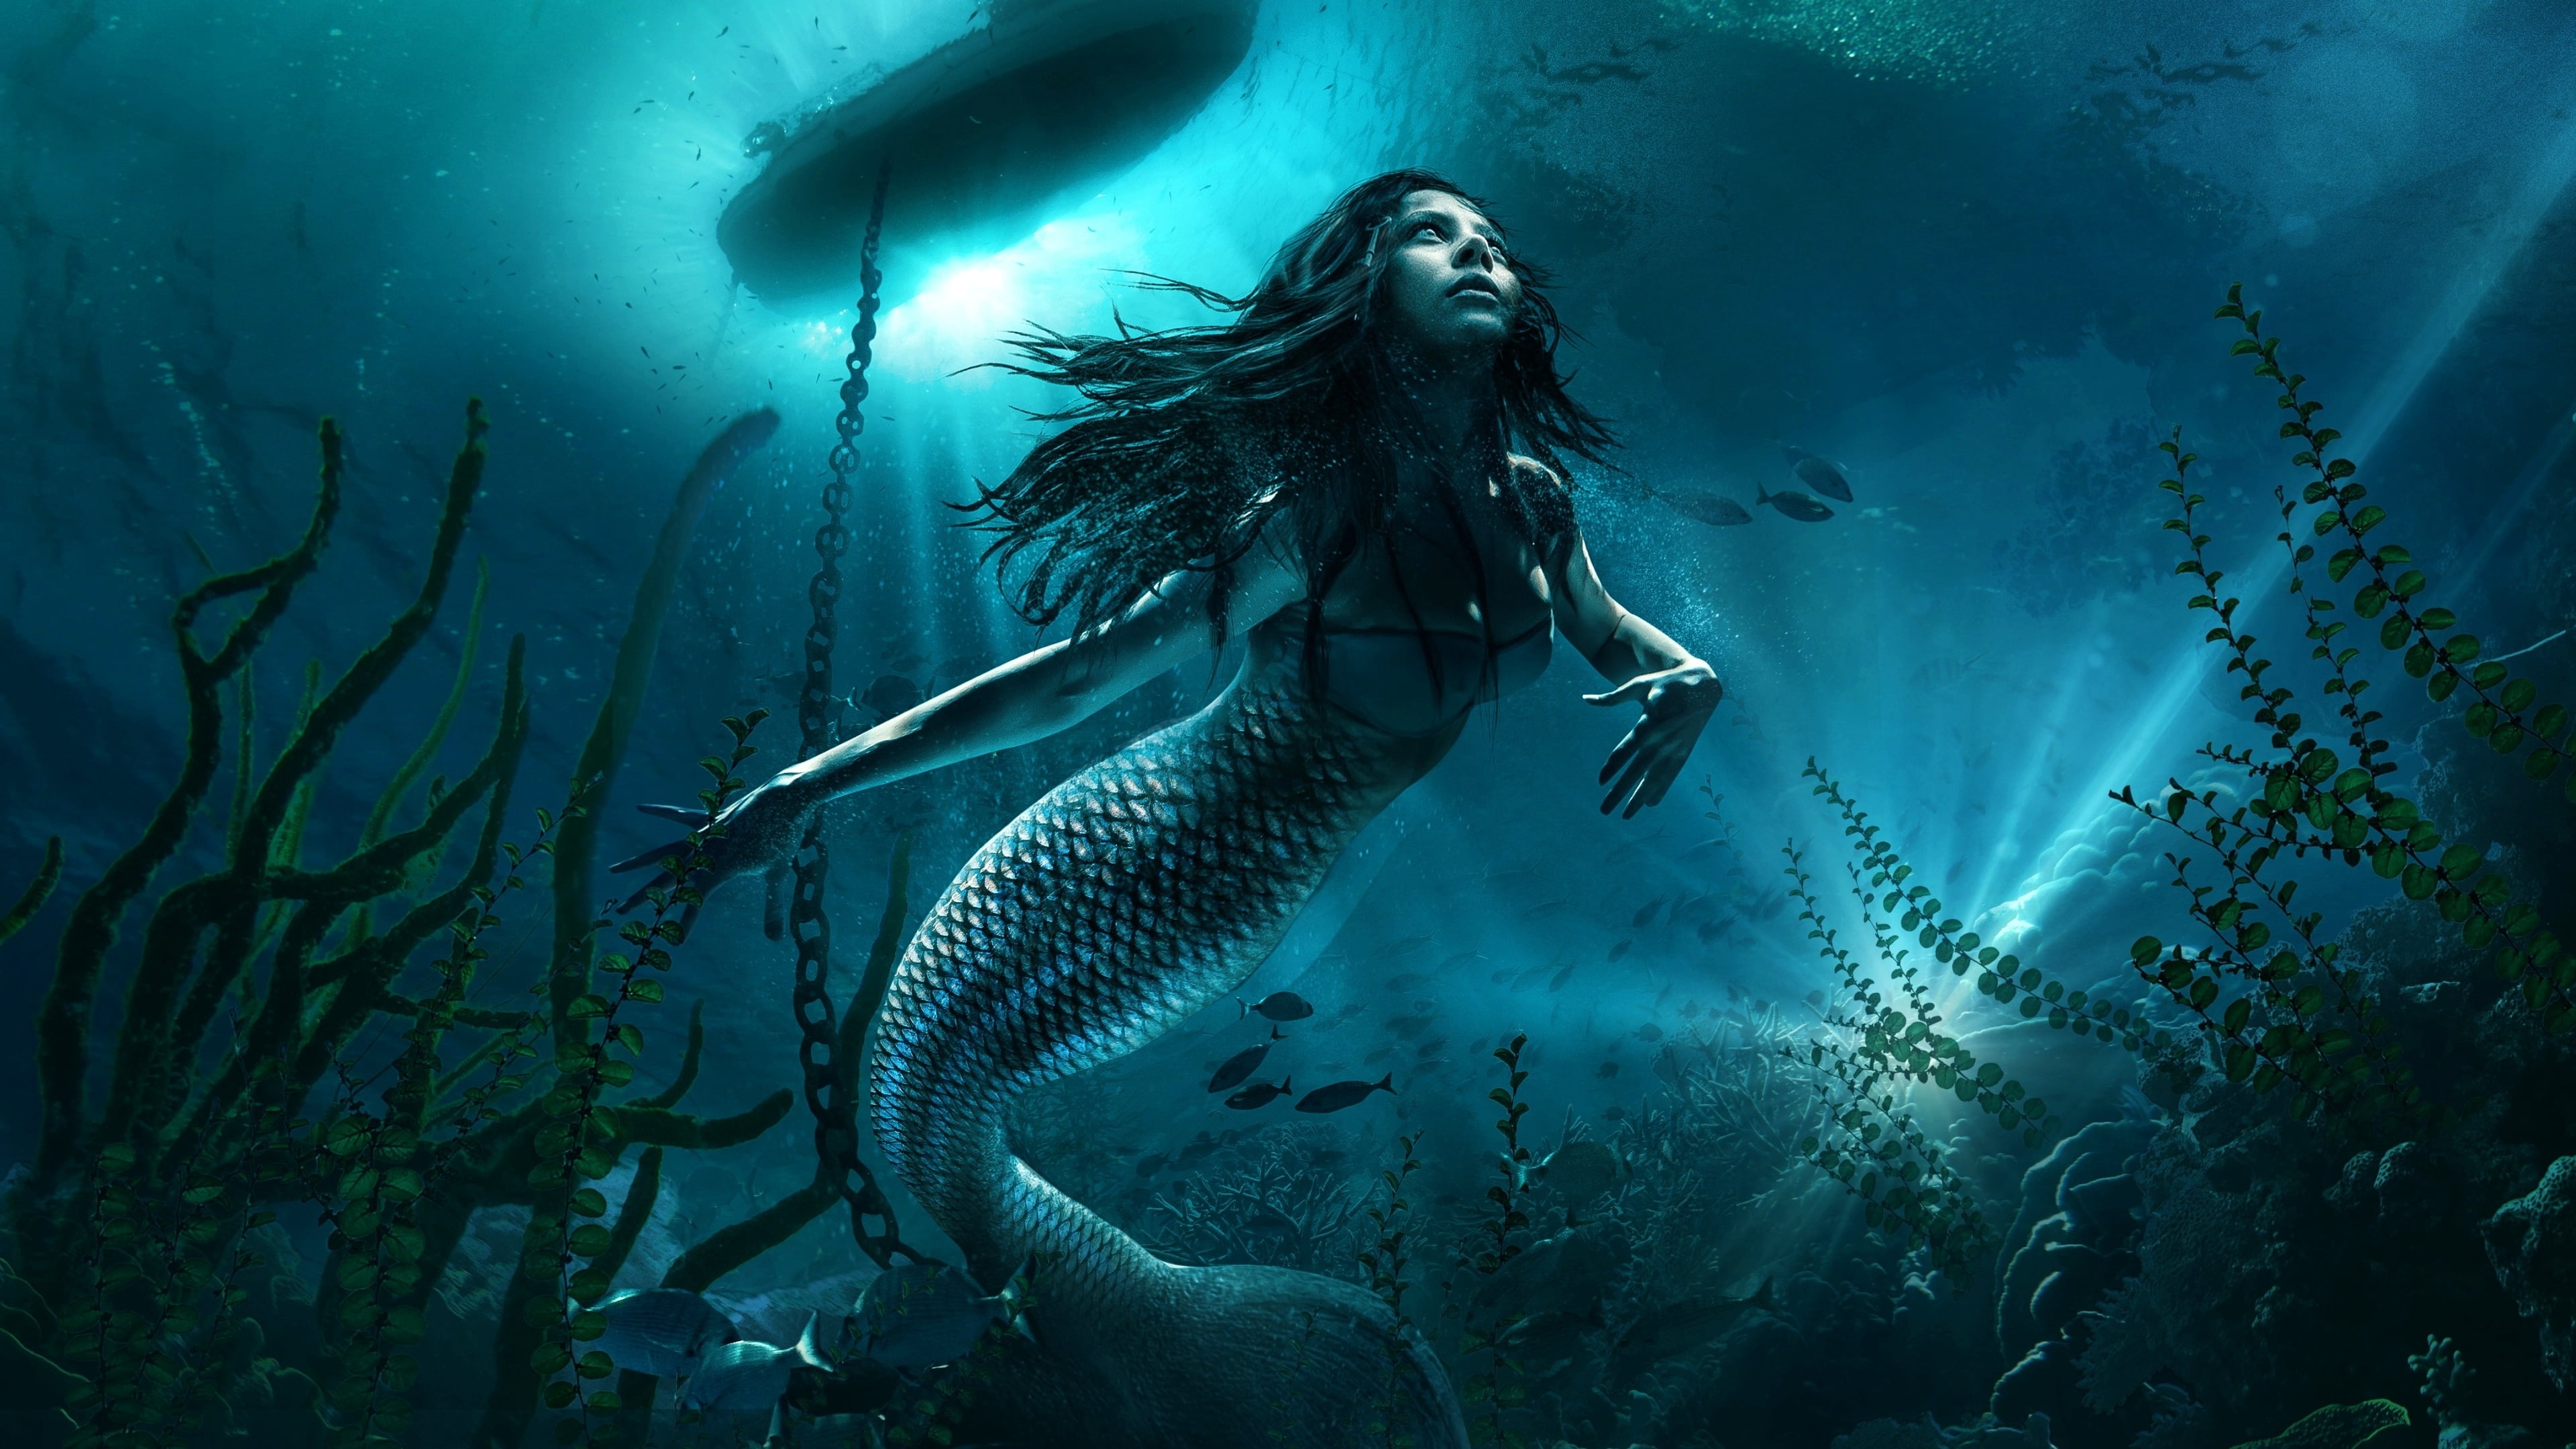 Captivating mermaid, 2019 movie backdrop, Magical allure, Undersea fantasy, 3840x2160 4K Desktop